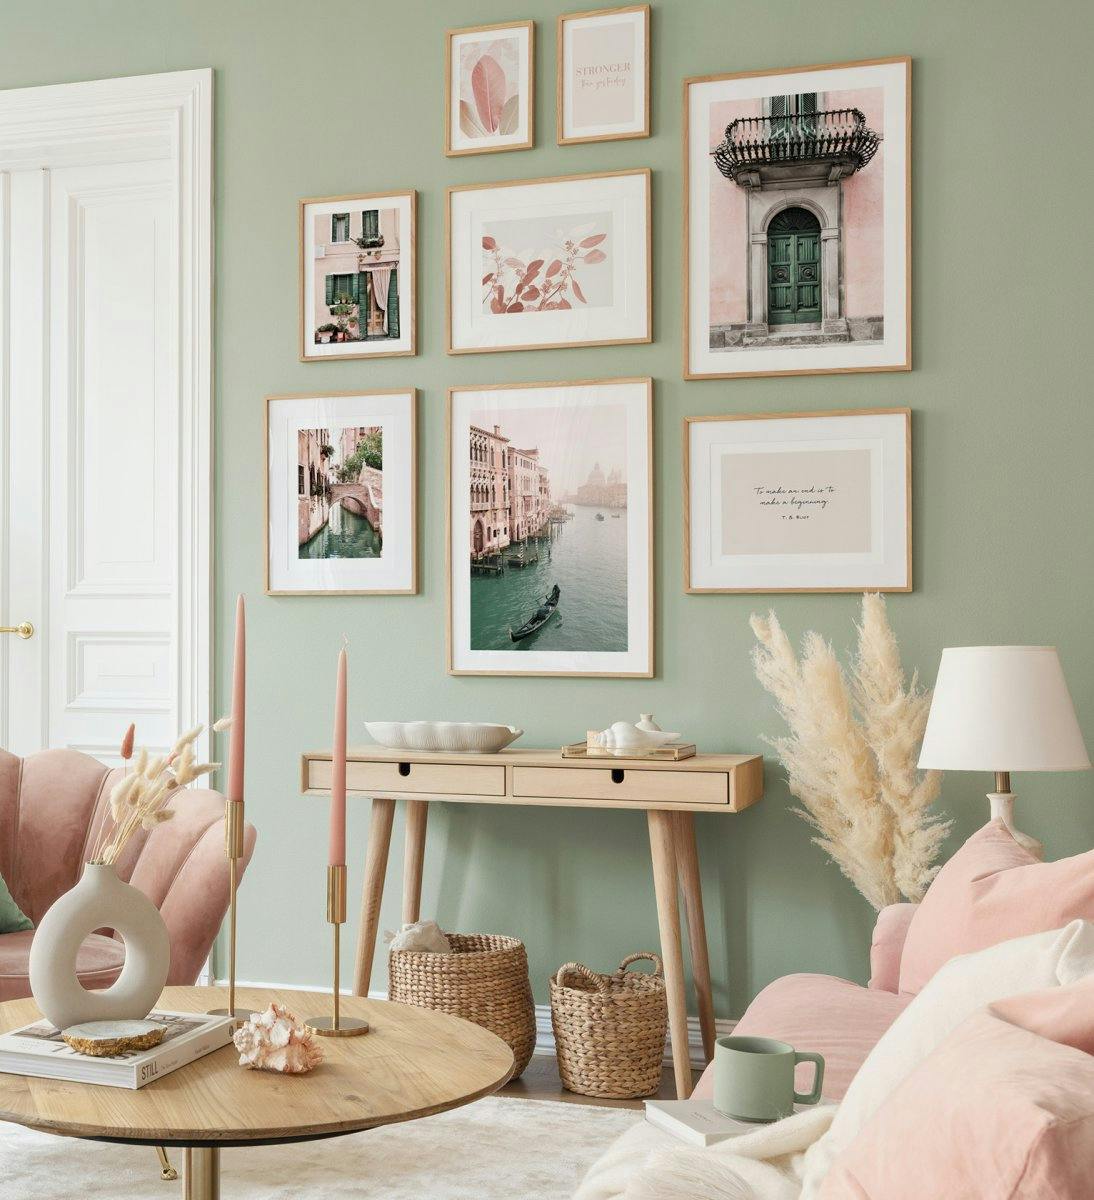 Fotografiile în culori pastelate creează o atmosferă jucăușă și proaspătă în sufragerie